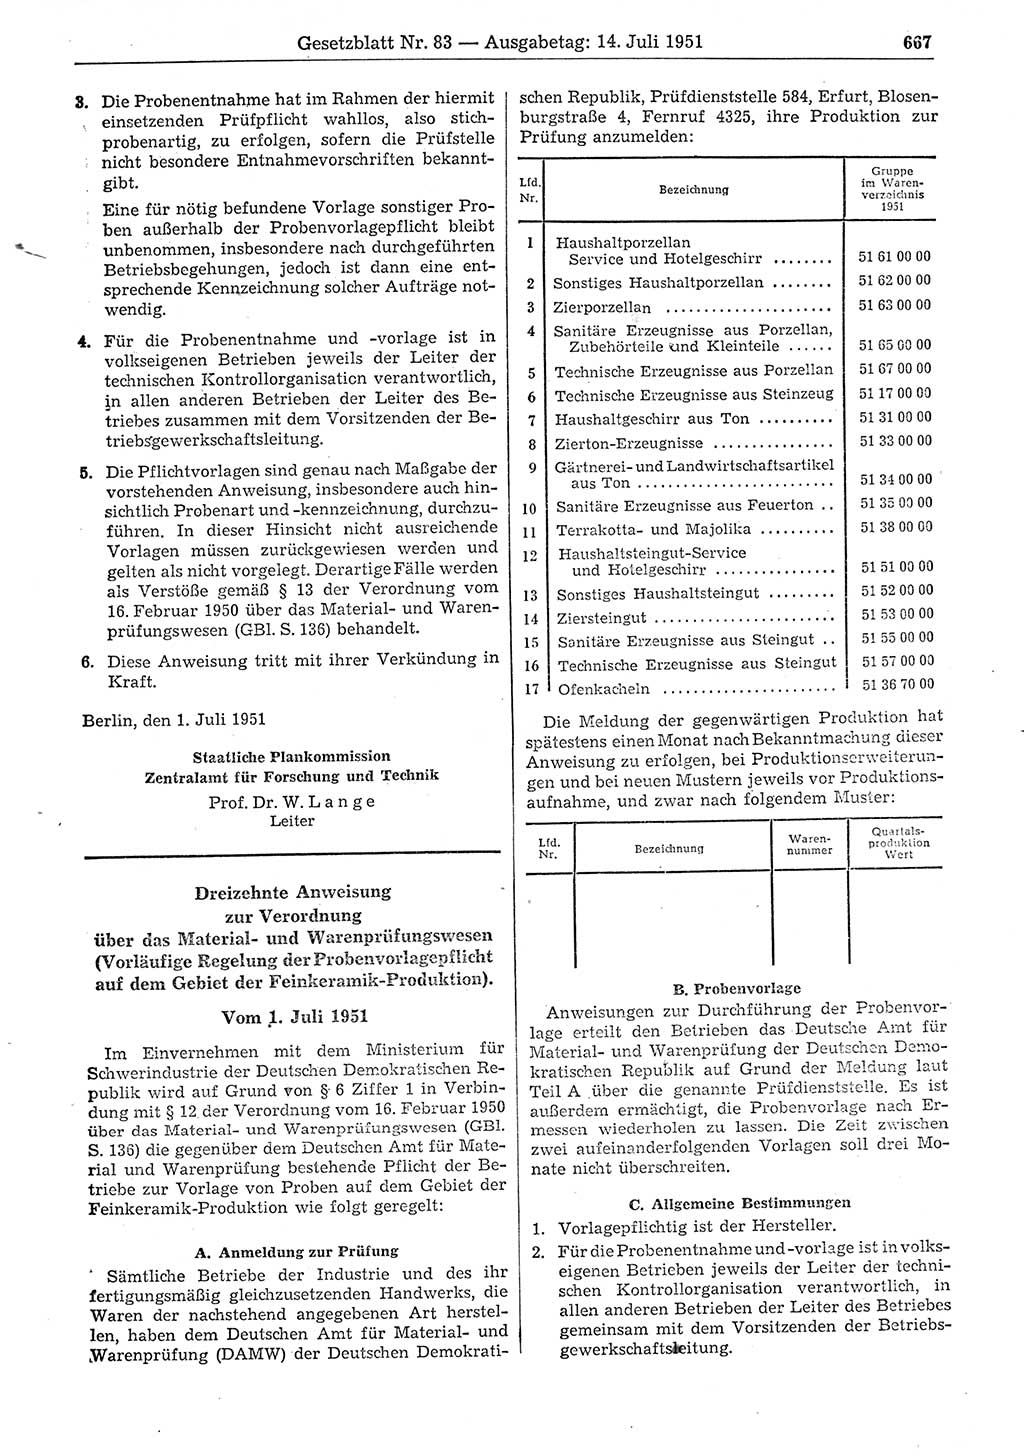 Gesetzblatt (GBl.) der Deutschen Demokratischen Republik (DDR) 1951, Seite 667 (GBl. DDR 1951, S. 667)